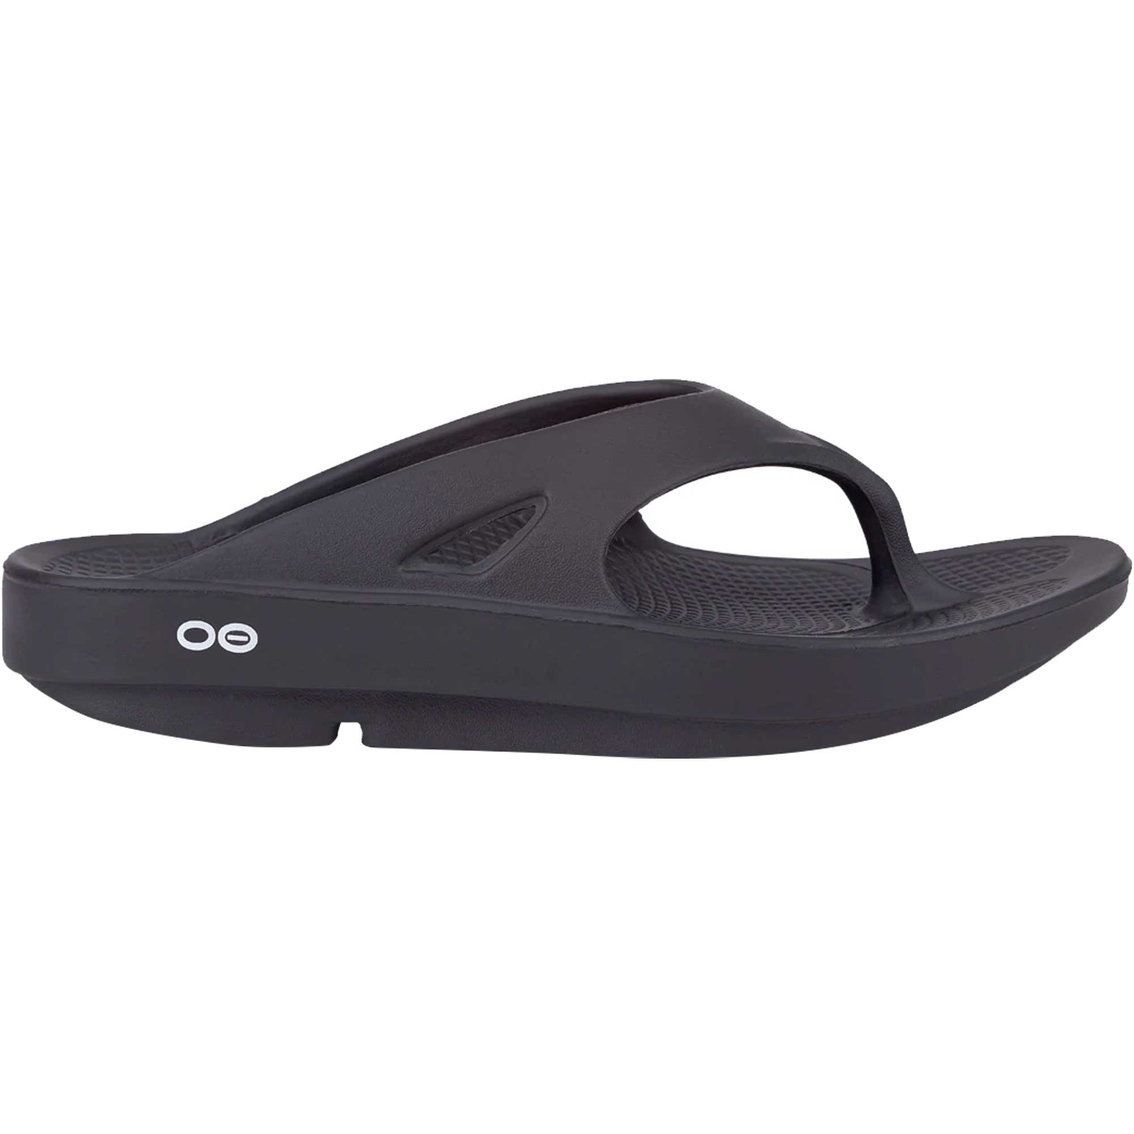 OOFOS Men's Ooriginal Sandals - Image 2 of 7